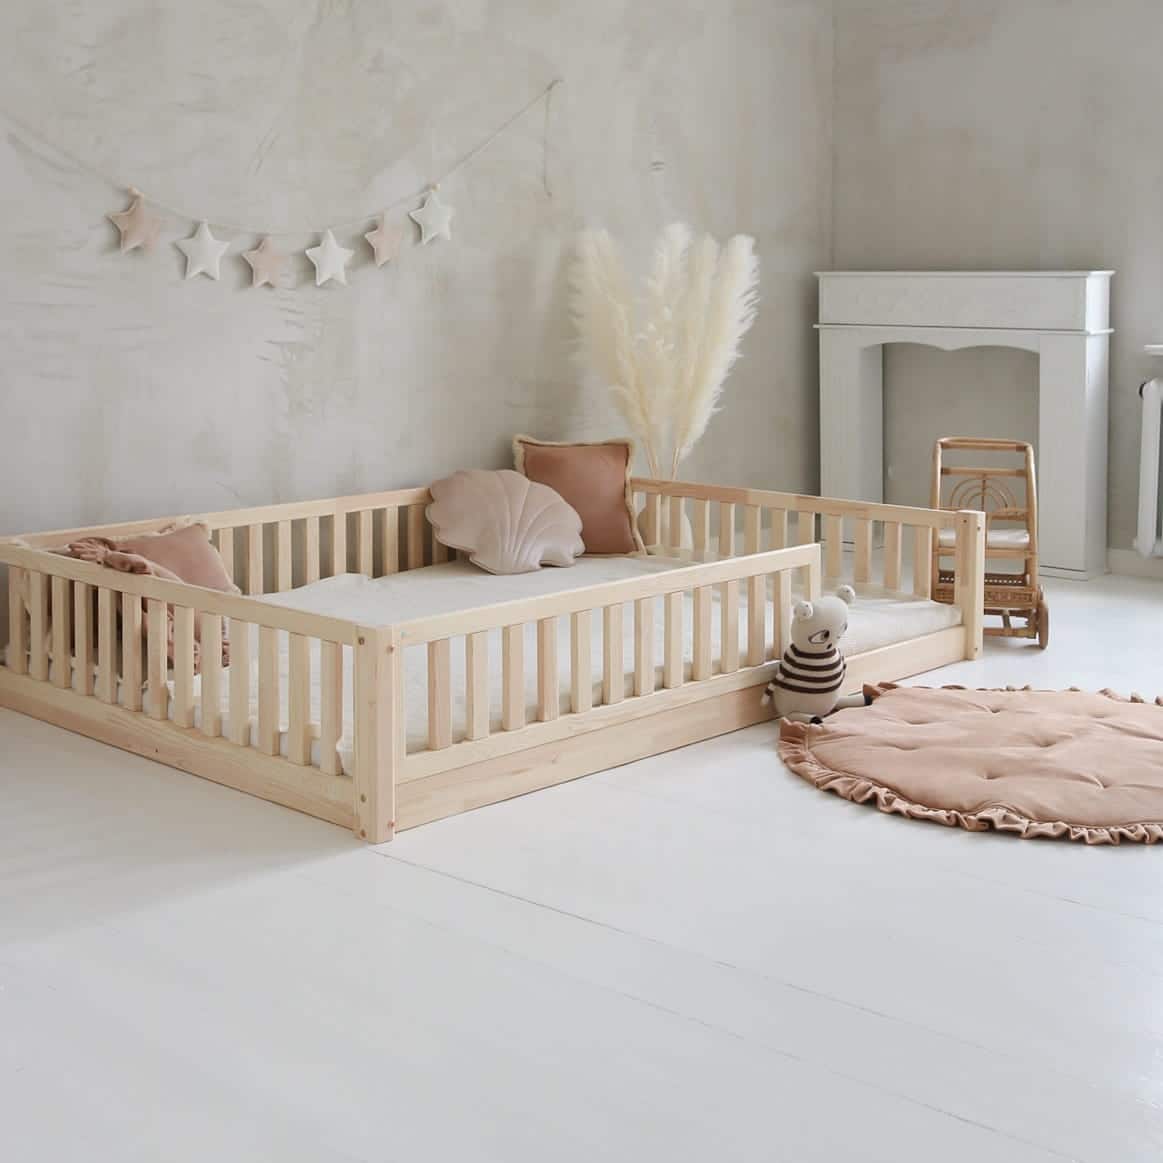 Lit au sol bébé : méthode Montessori au service du sommeil